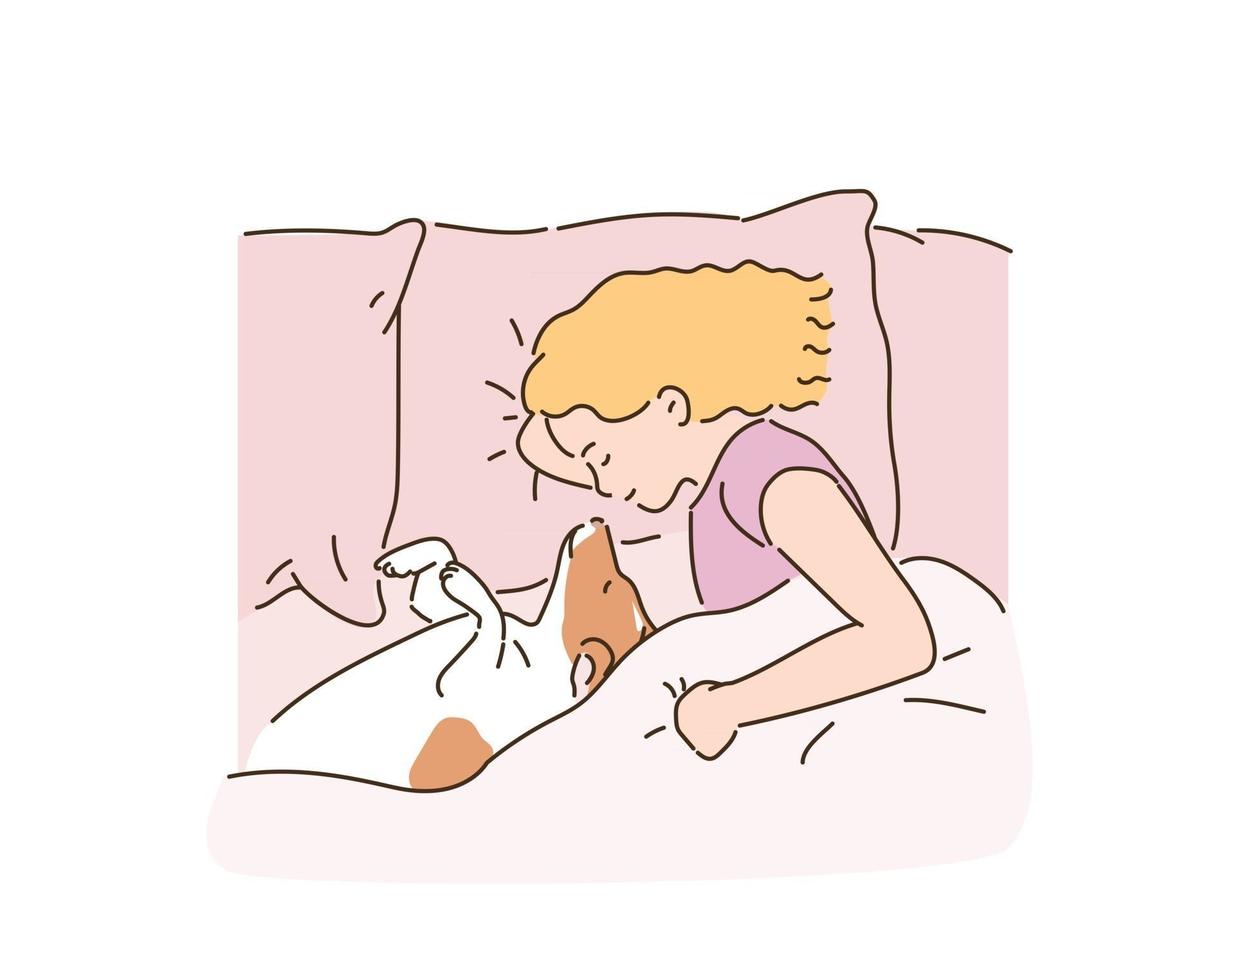 söt liten flicka sover i sängen med sin hund. handritade illustrationer för stilvektordesign. vektor